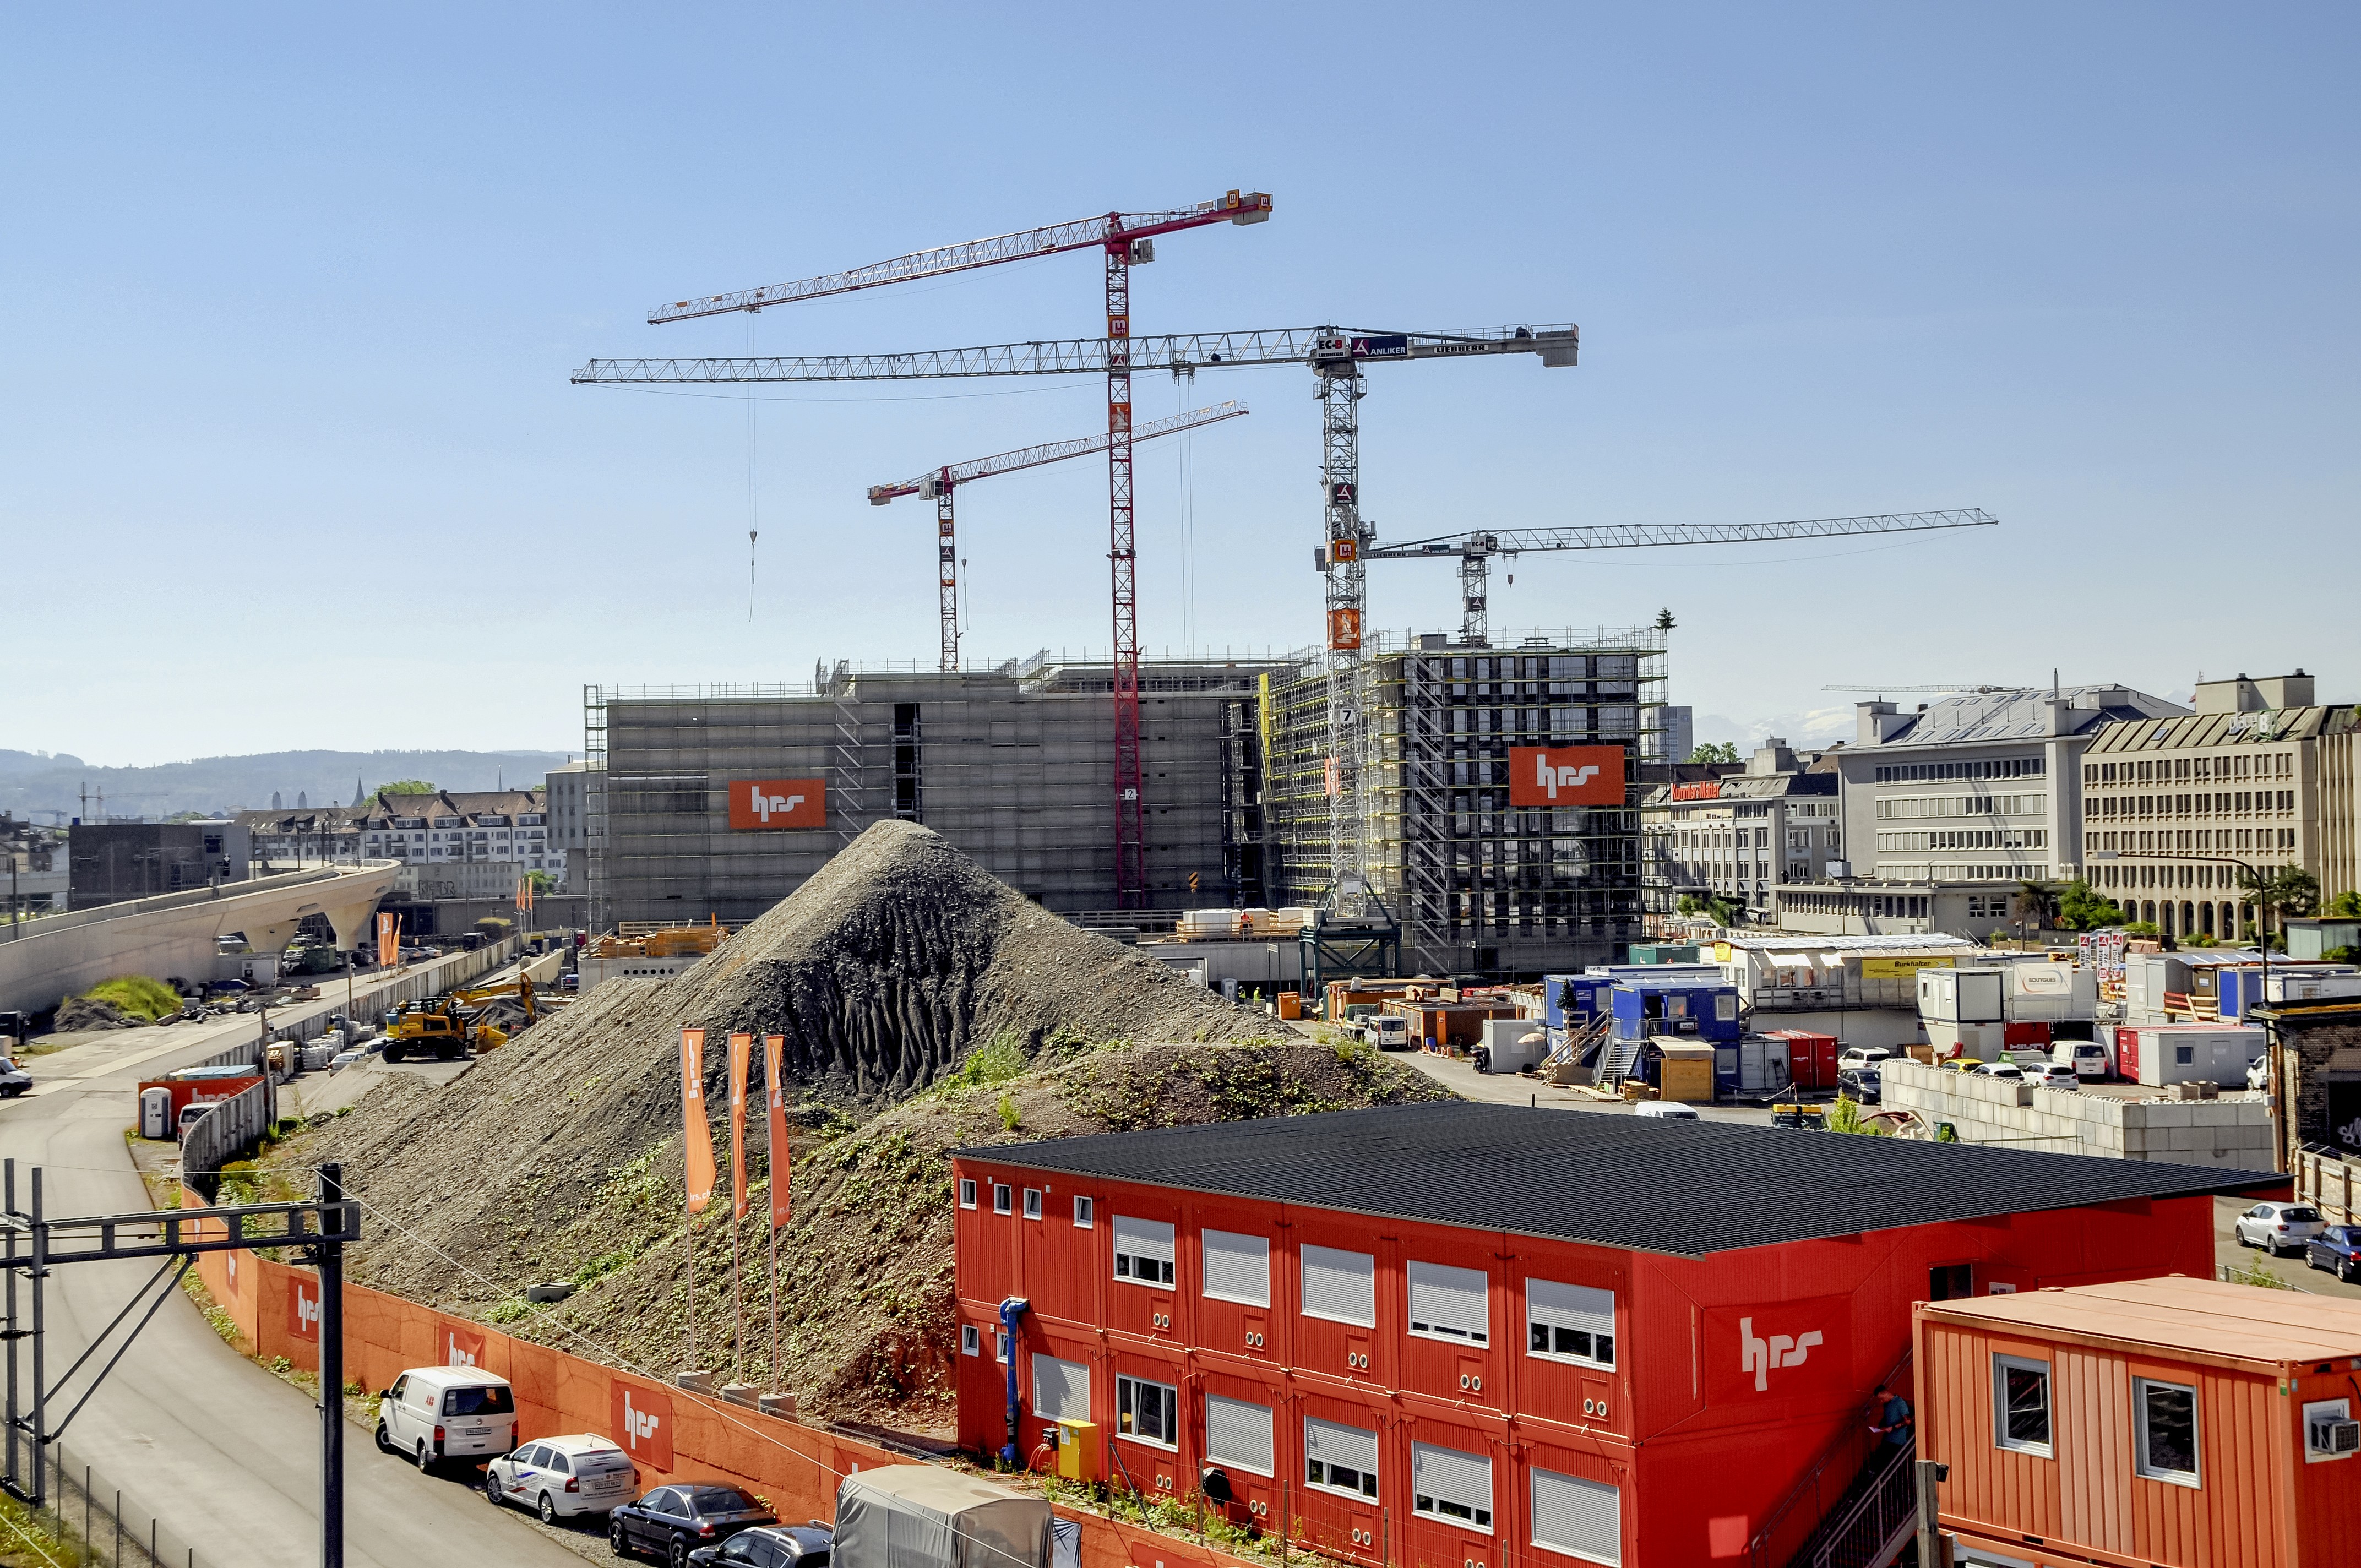 Der Neubau des Polizei- und Justizzentrums Zürich steht im Rohbau. Nun folgen der Innenausbau und umfangreiche Tests, bevor Mitte 2022 das neue PJZ seinen Betrieb aufnehmen wird.